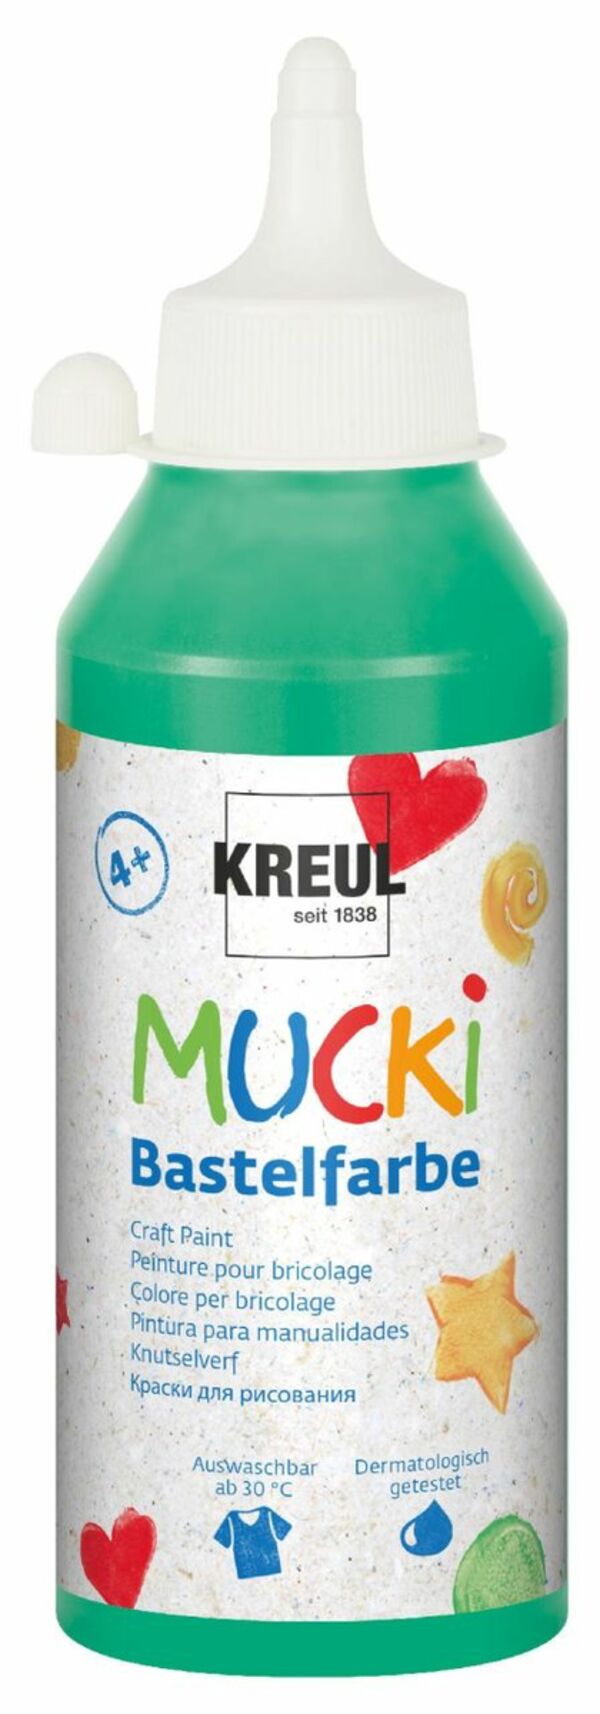 Bild 1 von Kreul Mucki Bastelfarbe grün, 250 ml